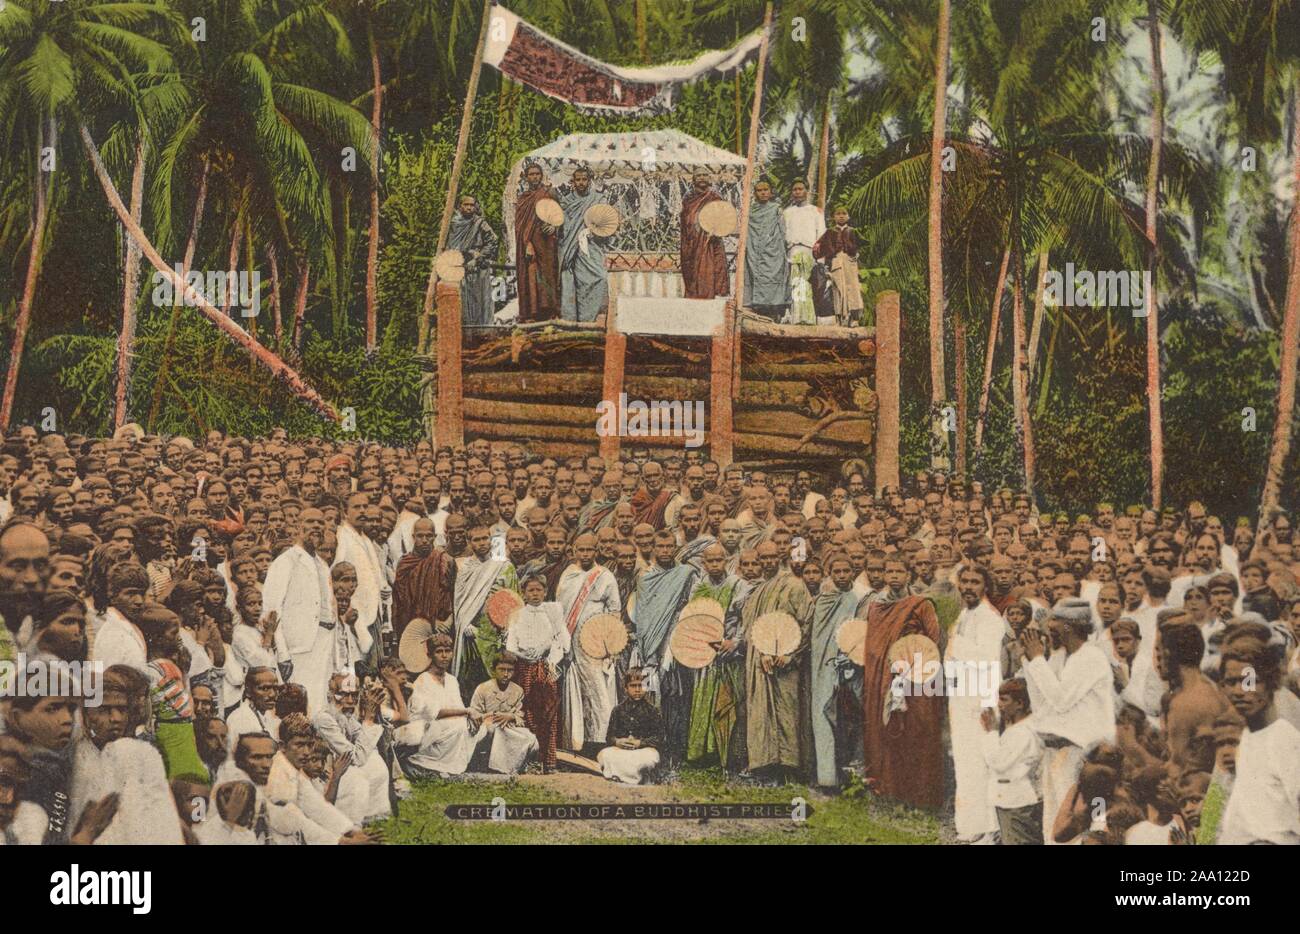 Carte postale illustrée d'une grande foule de moines bouddhistes pour assister à une cérémonie de crémation, Sri Lanka, publié par A.W.A. Plaque et Co, 1915. À partir de la Bibliothèque publique de New York. () Banque D'Images